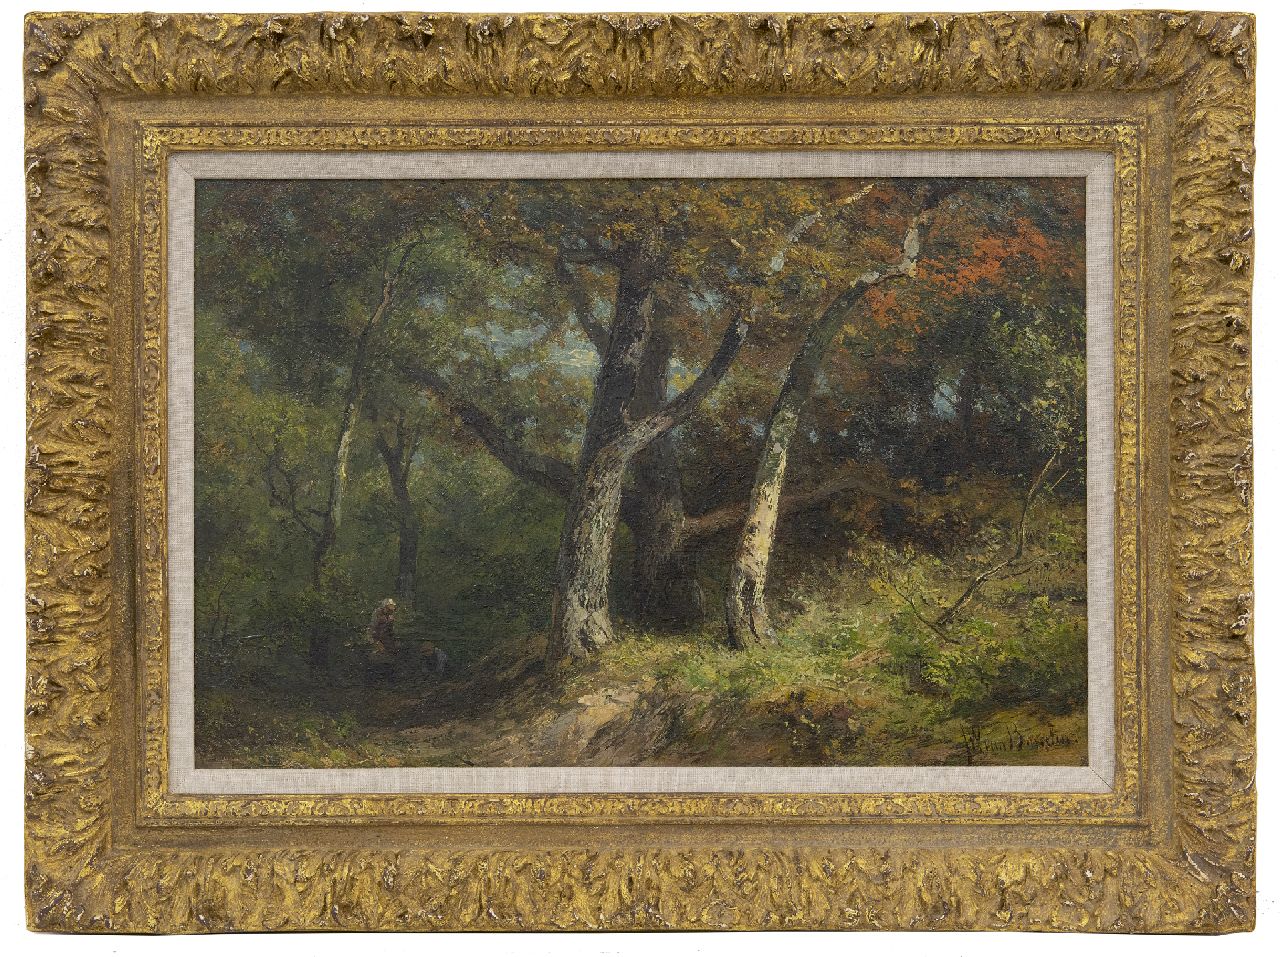 Borselen J.W. van | Jan Willem van Borselen | Schilderijen te koop aangeboden | Houtsprokkelaars op een bospad, olieverf op paneel 27,8 x 42,0 cm, gesigneerd rechtsonder